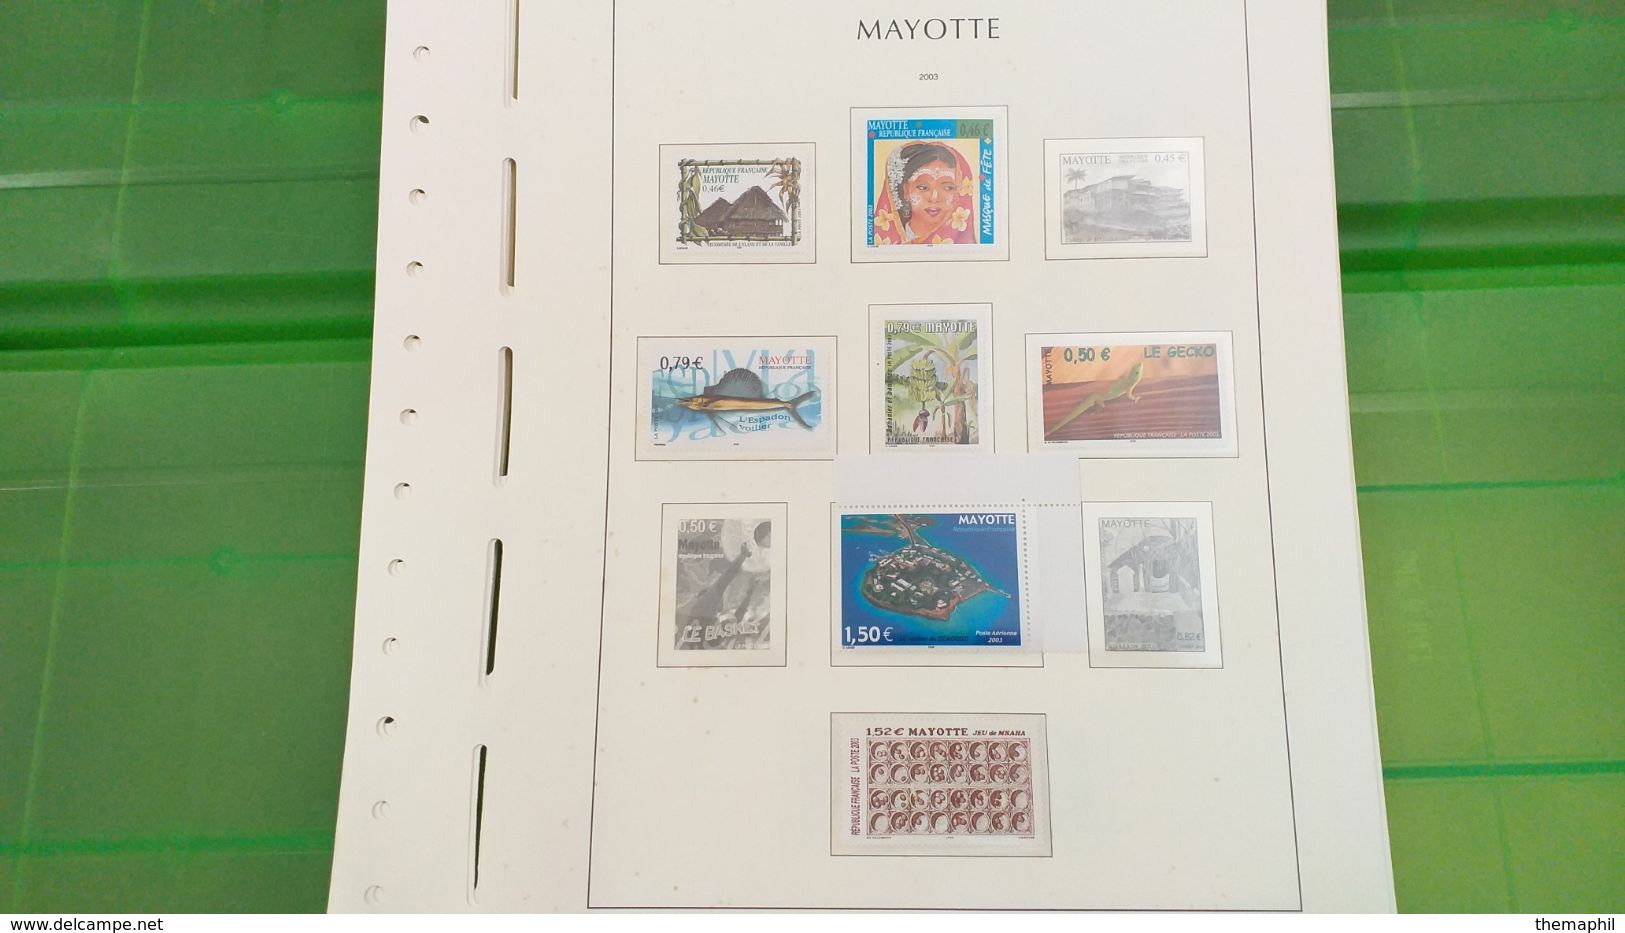 lot n° TH 492  MAYOTTE un lot de timbres neufs xx sur page d'albums